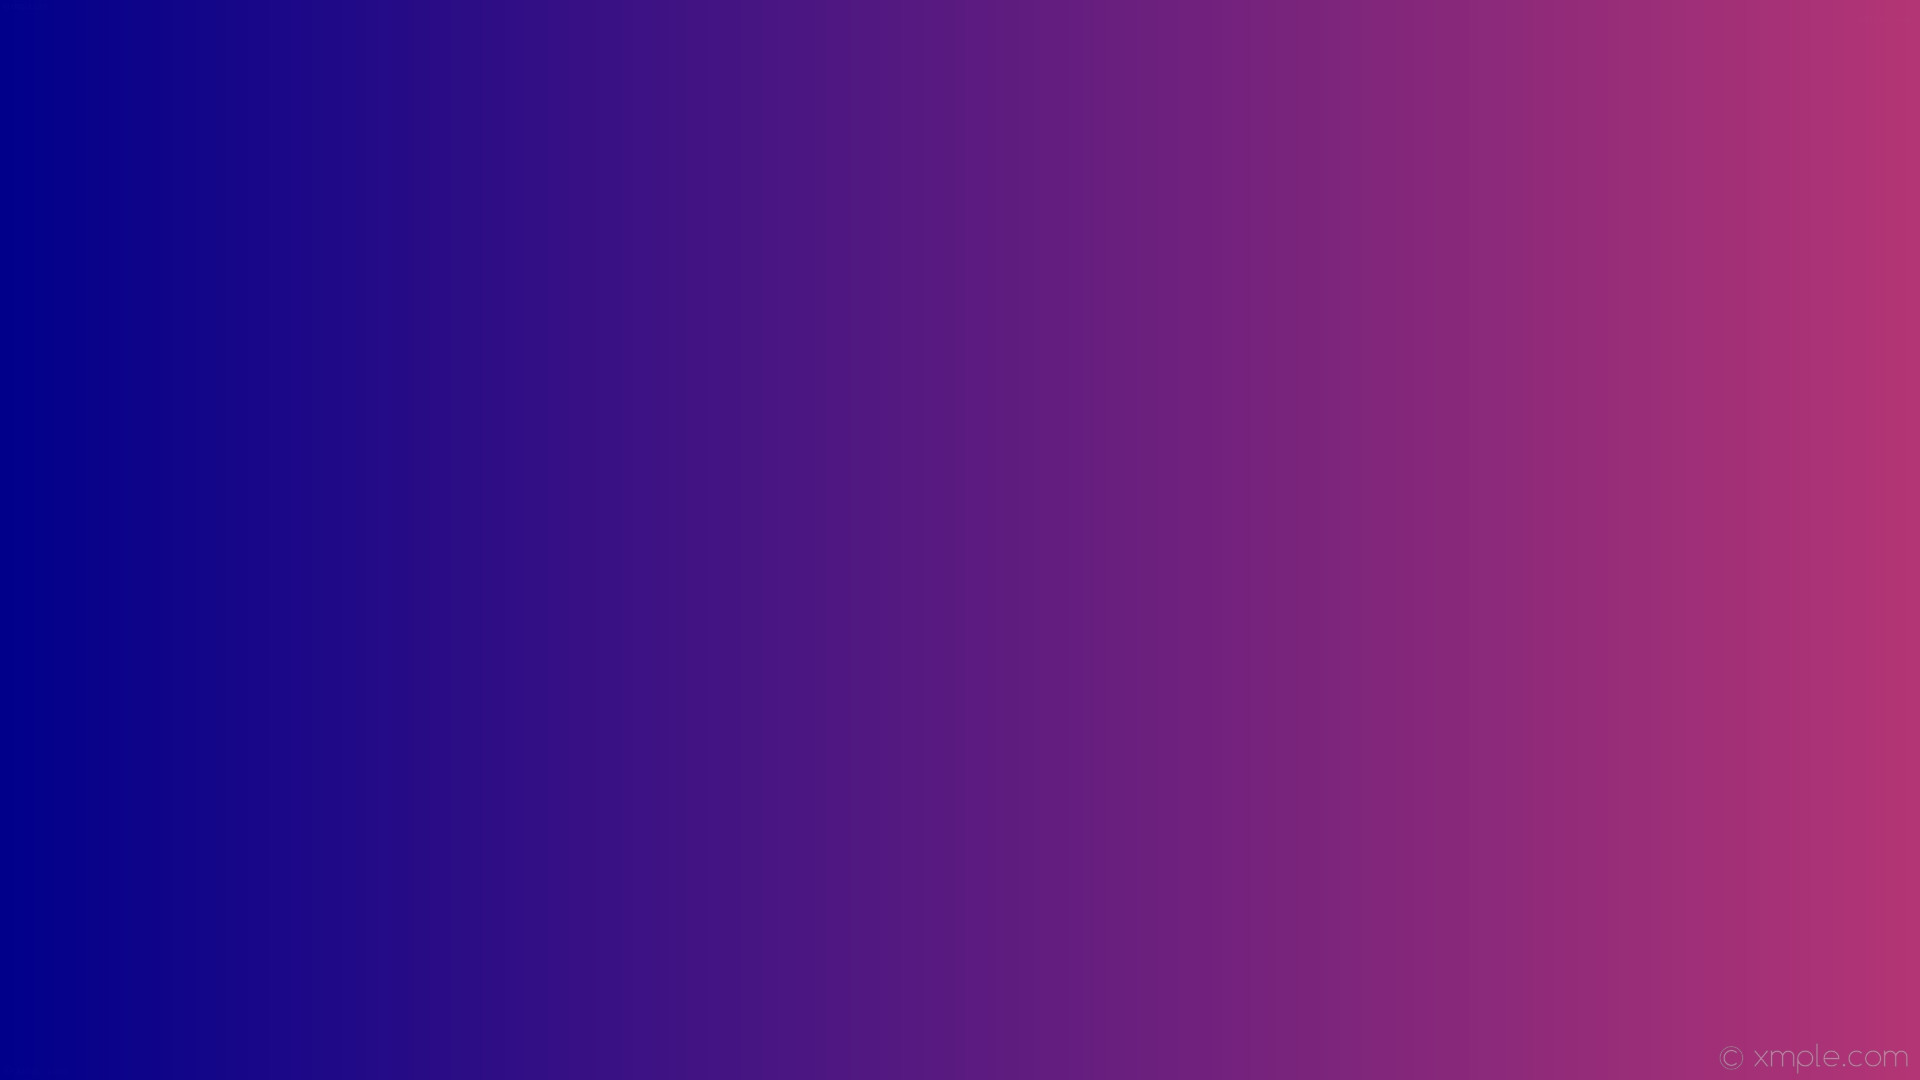 1920x1080 wallpaper blue gradient linear pink dark blue #b43575 #00008b 0Â°